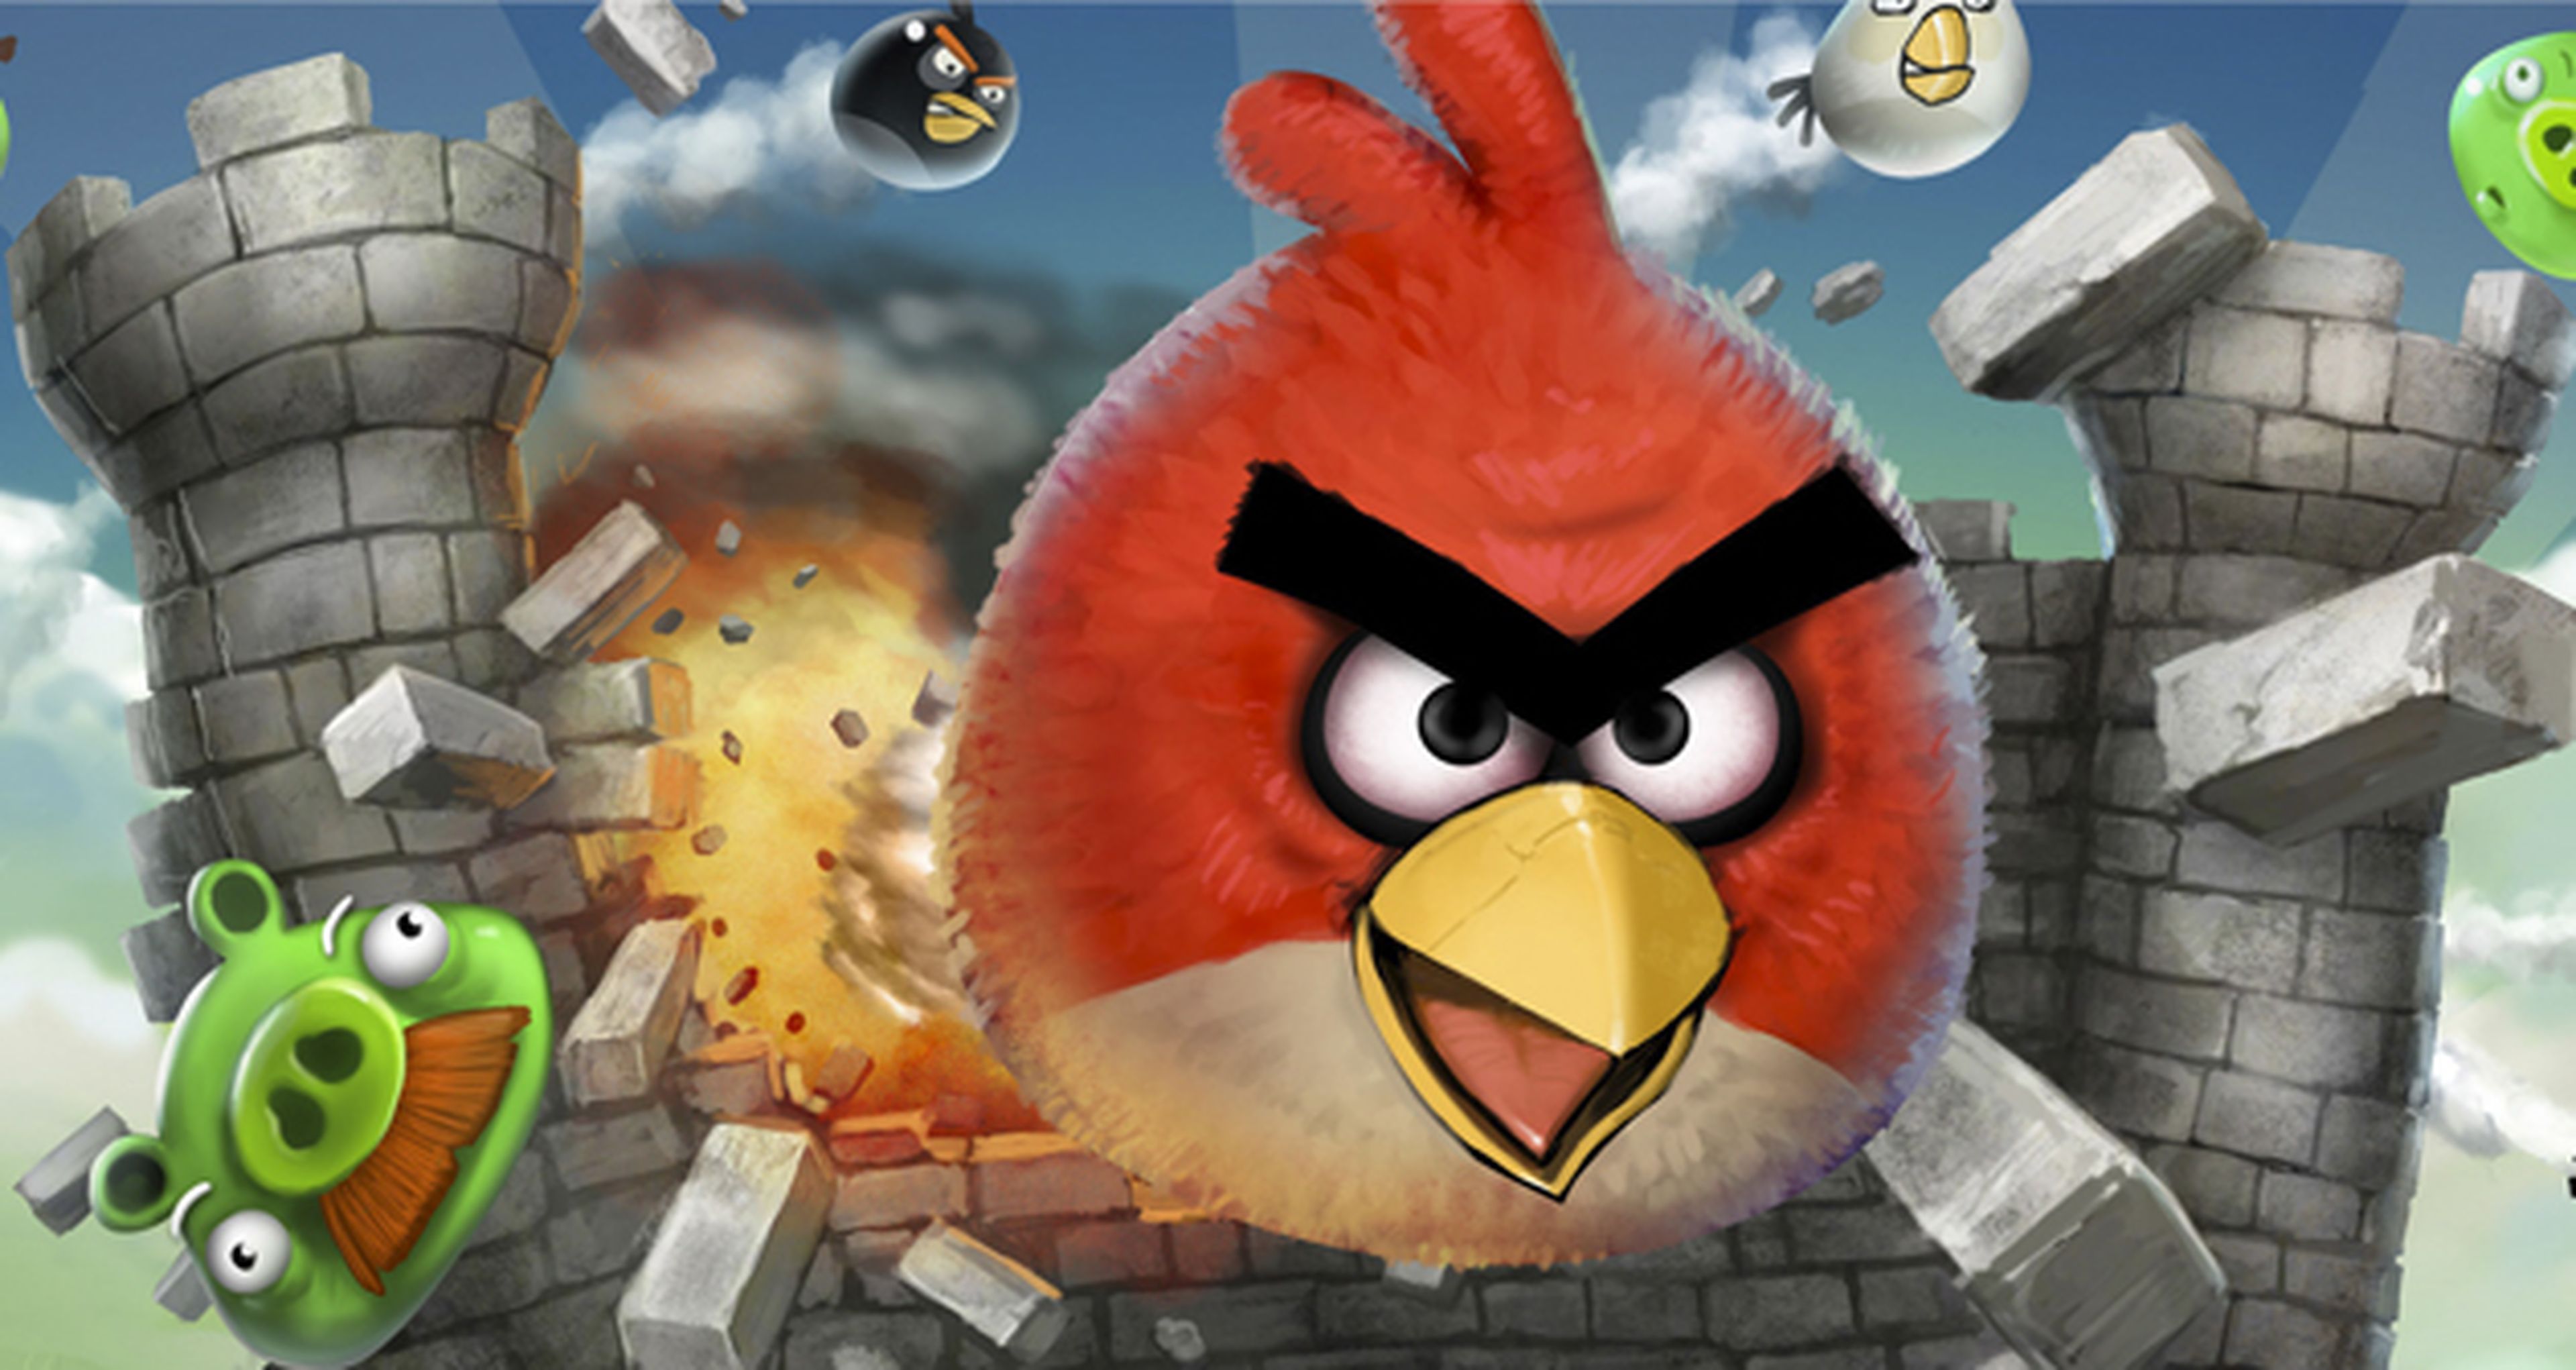 Angry Birds invertirá una fortuna en márketing para lanzar su película